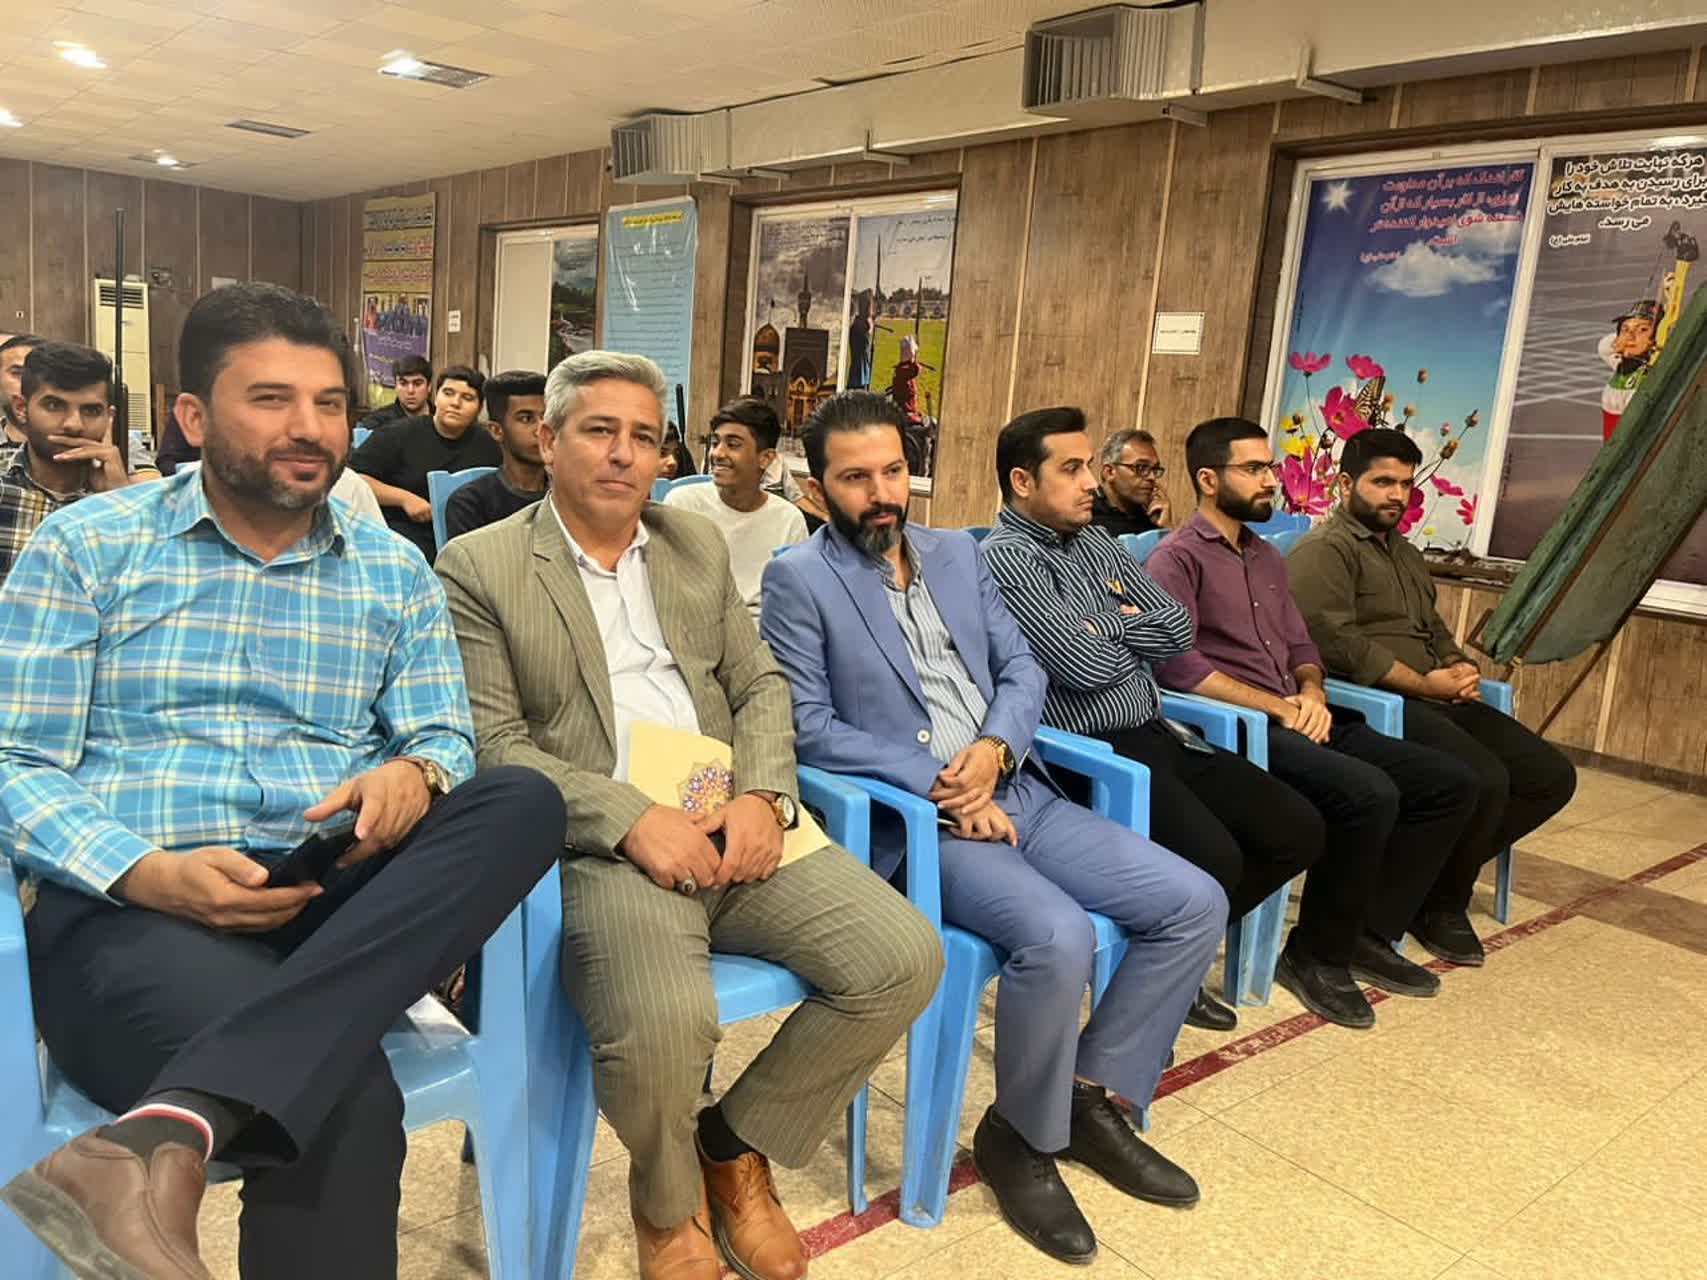  مسابقه تیراندازی به مناسبت بزرگداشت روز ۱۳ آبان در شهرستان امیدیه 